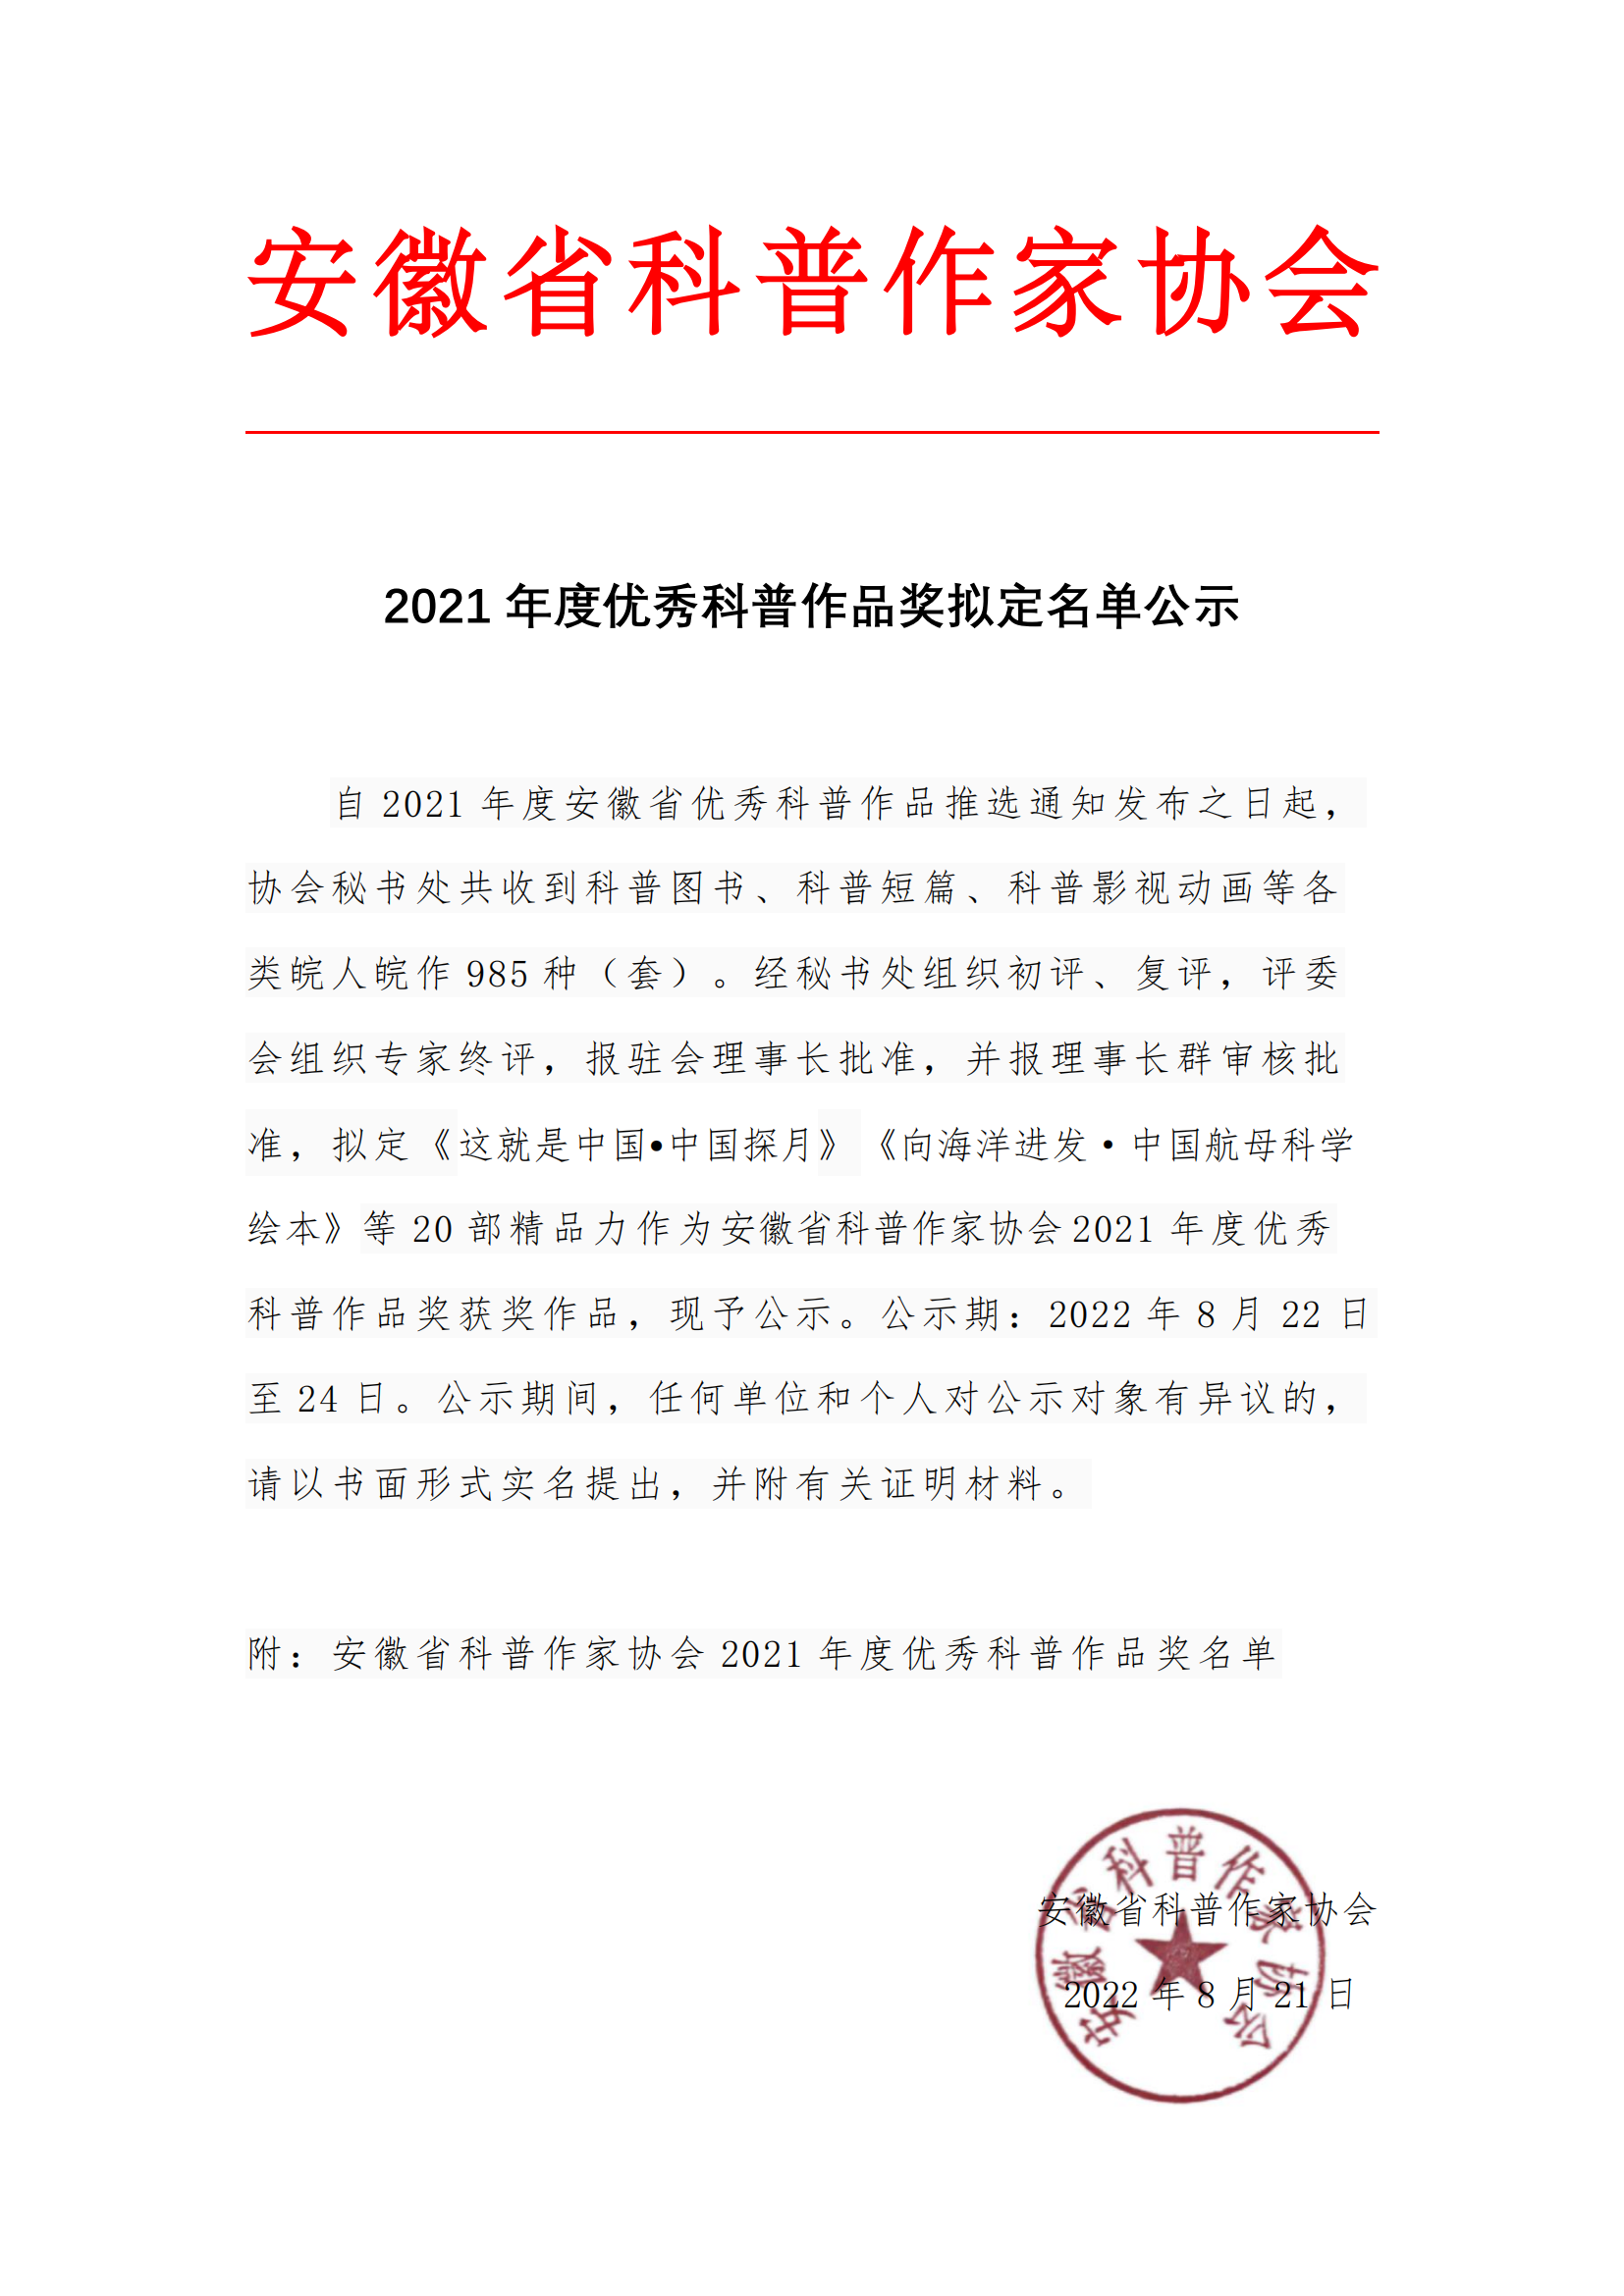 安徽省科普作家协会2021年度优秀科普作品奖拟定名单公示